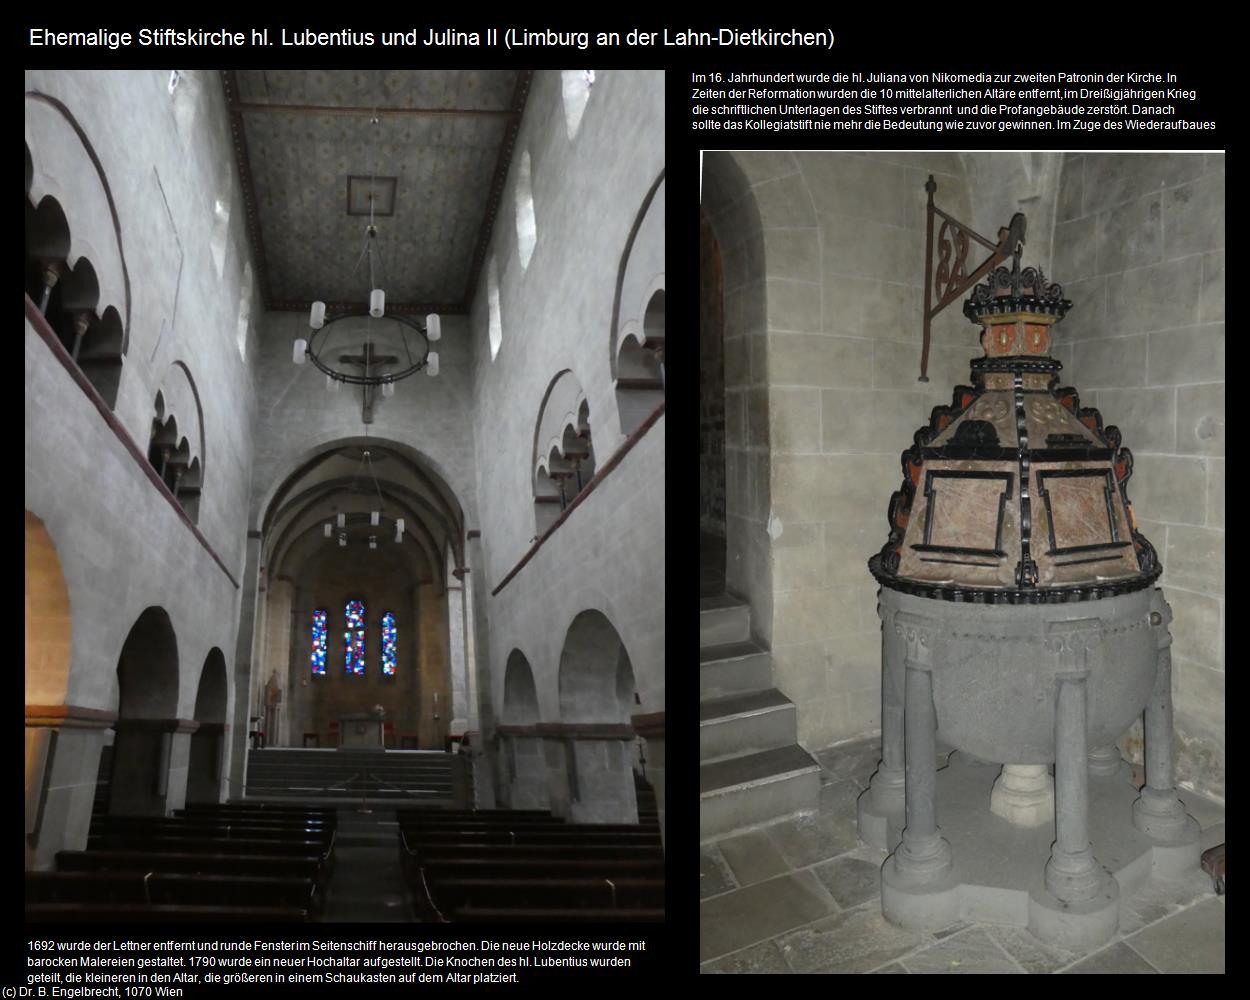 Ehem. Stiftsk. hl. Lubentius und Julina II (Dietkirchen)  (Limburg an der Lahn) in Kulturatlas-HESSEN